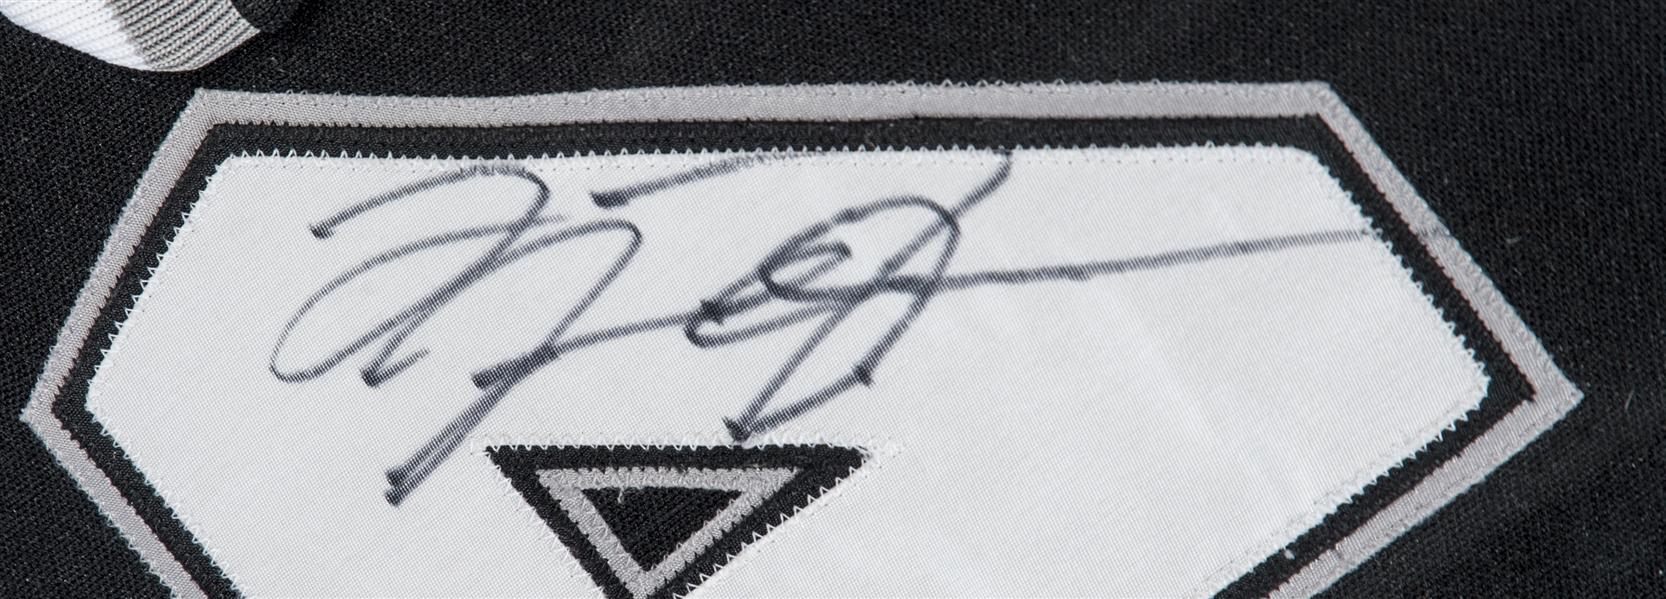 Michael Jordan Autographed White Sox Jersey